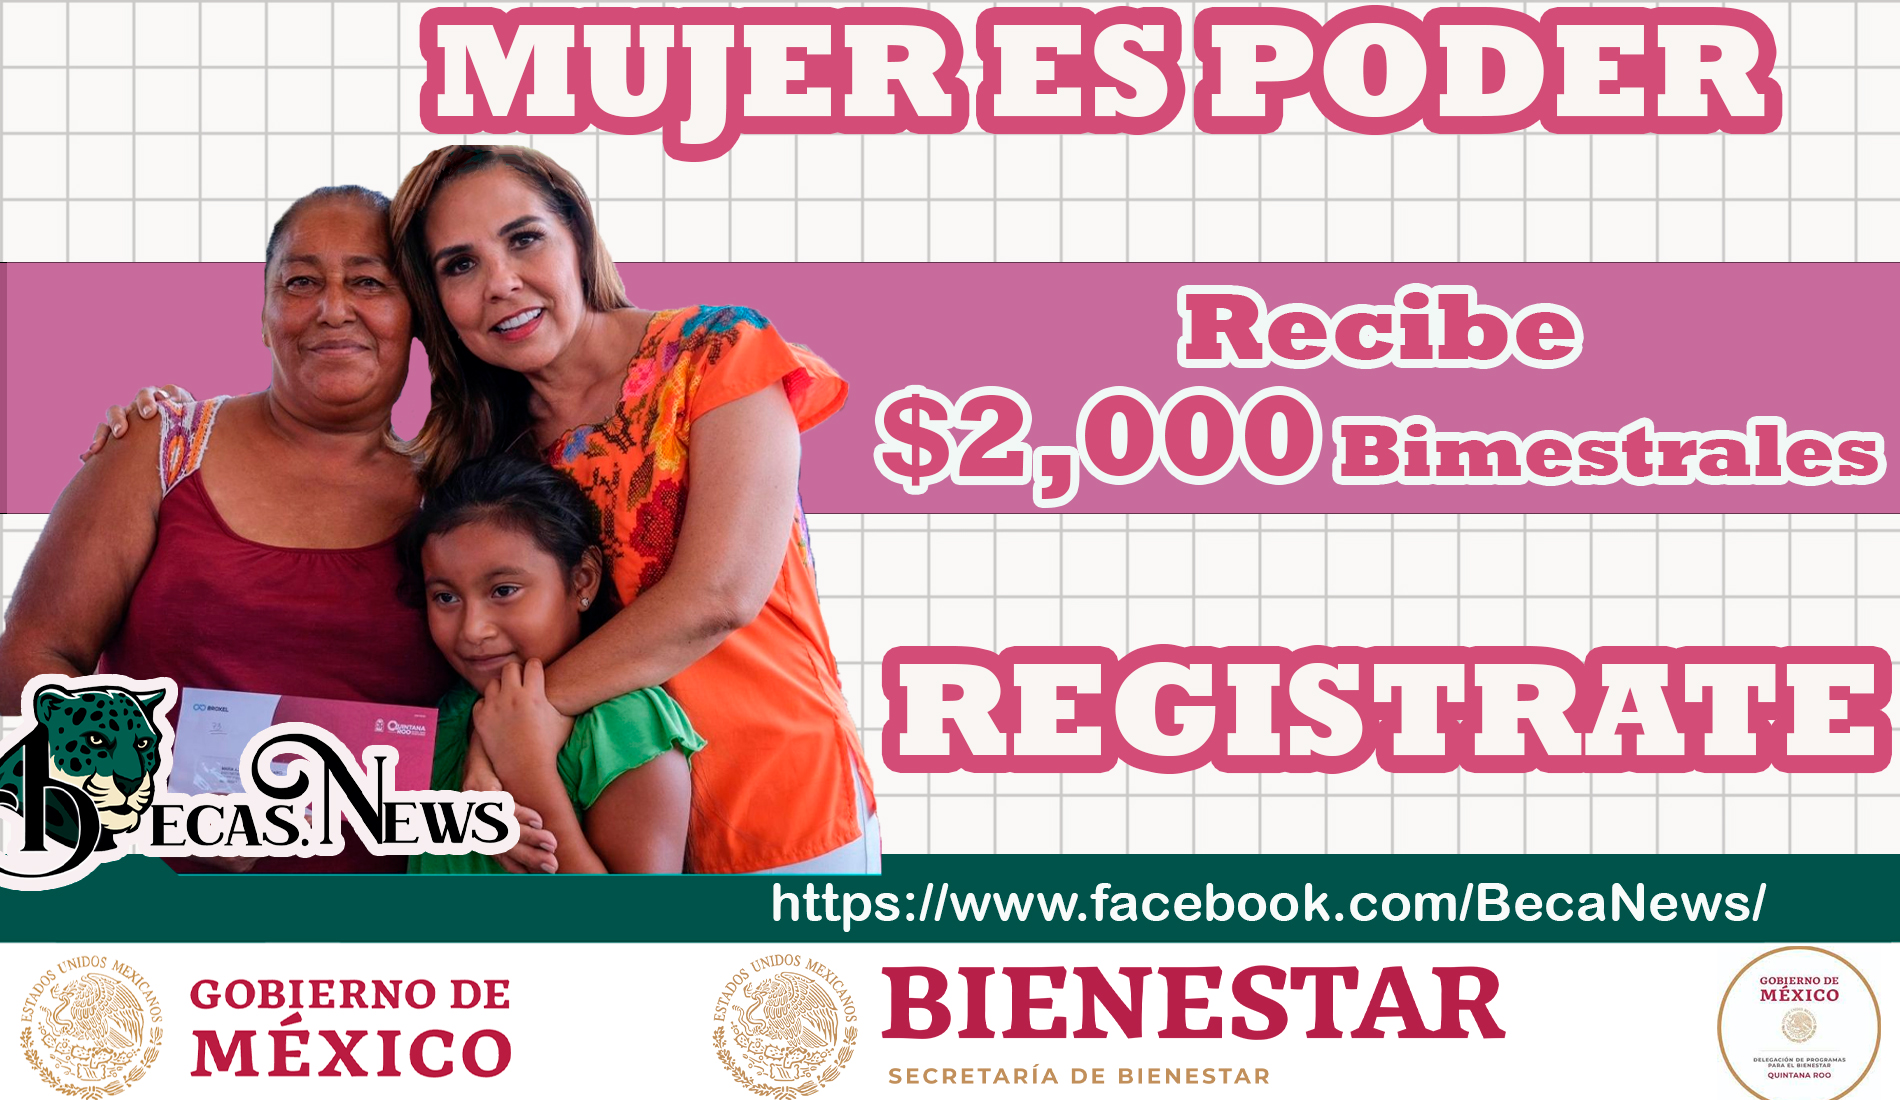 ¡ULTIMOS DIAS! Incorpórate al programa "Mujer es poder" y recibe 2 mil pesos bimestrales